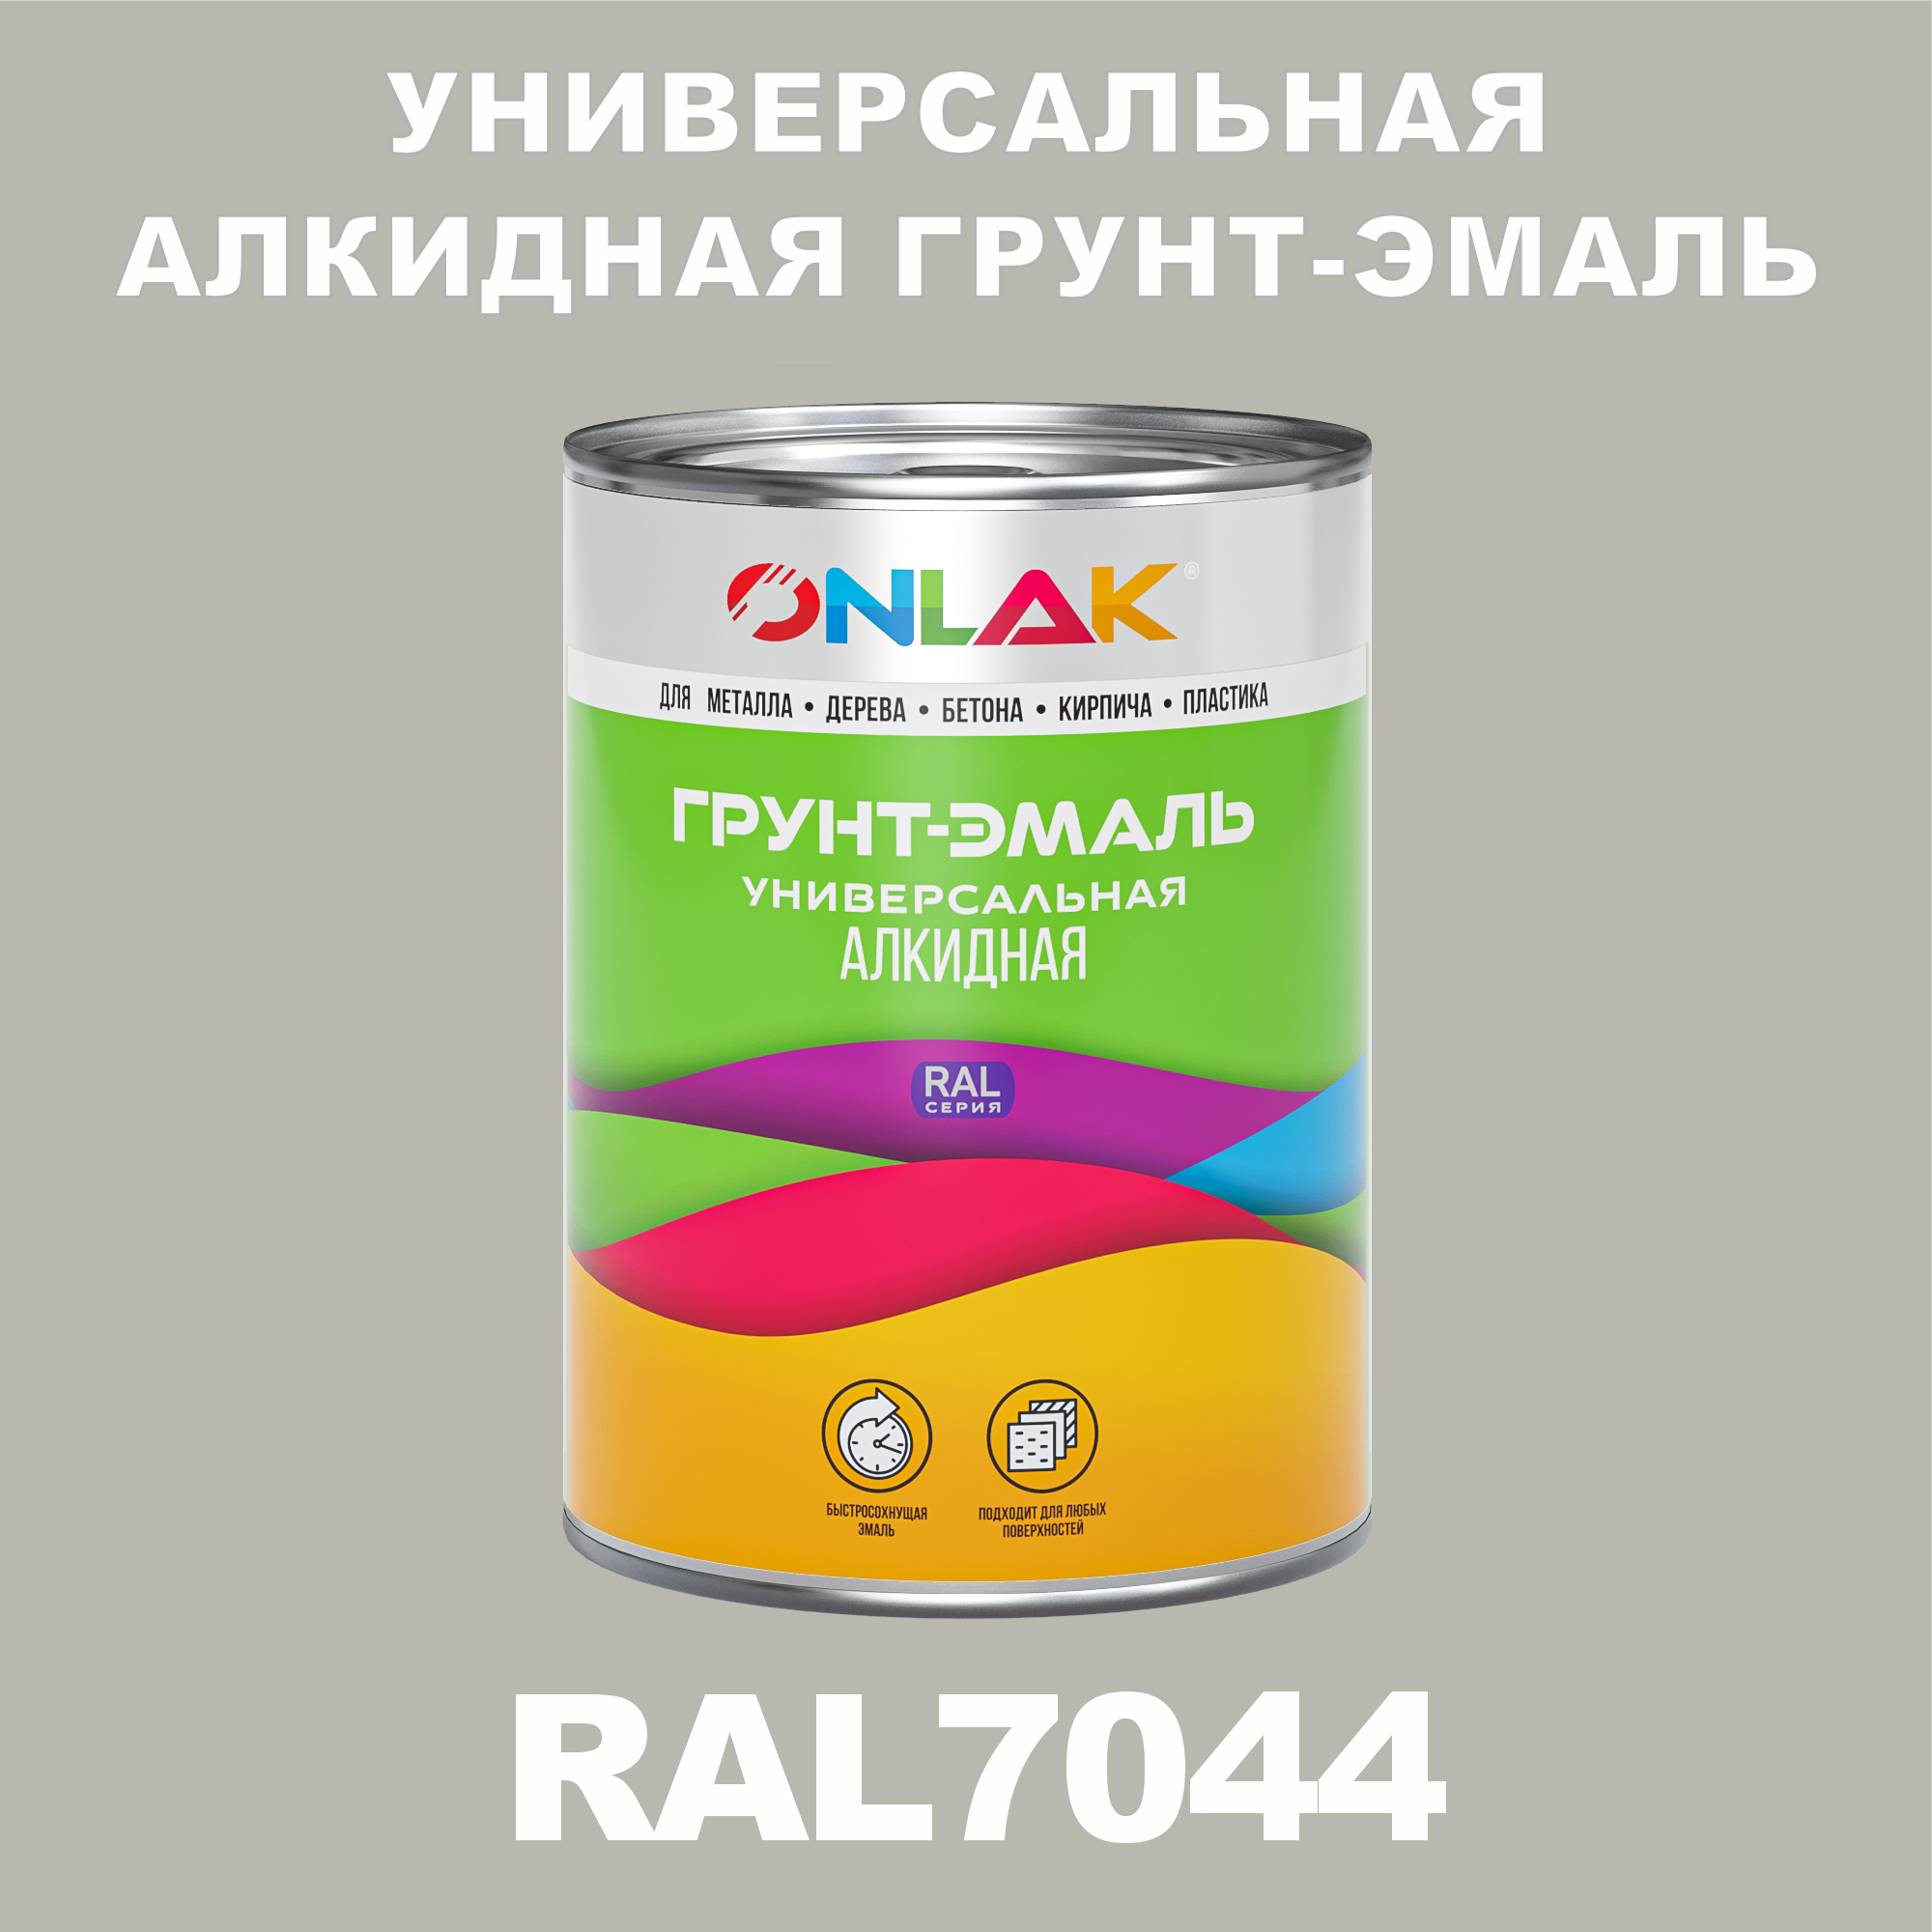 Грунт-эмаль ONLAK 1К RAL7044 антикоррозионная алкидная по металлу по ржавчине 1 кг грунт эмаль yollo по ржавчине алкидная синяя 0 9 кг